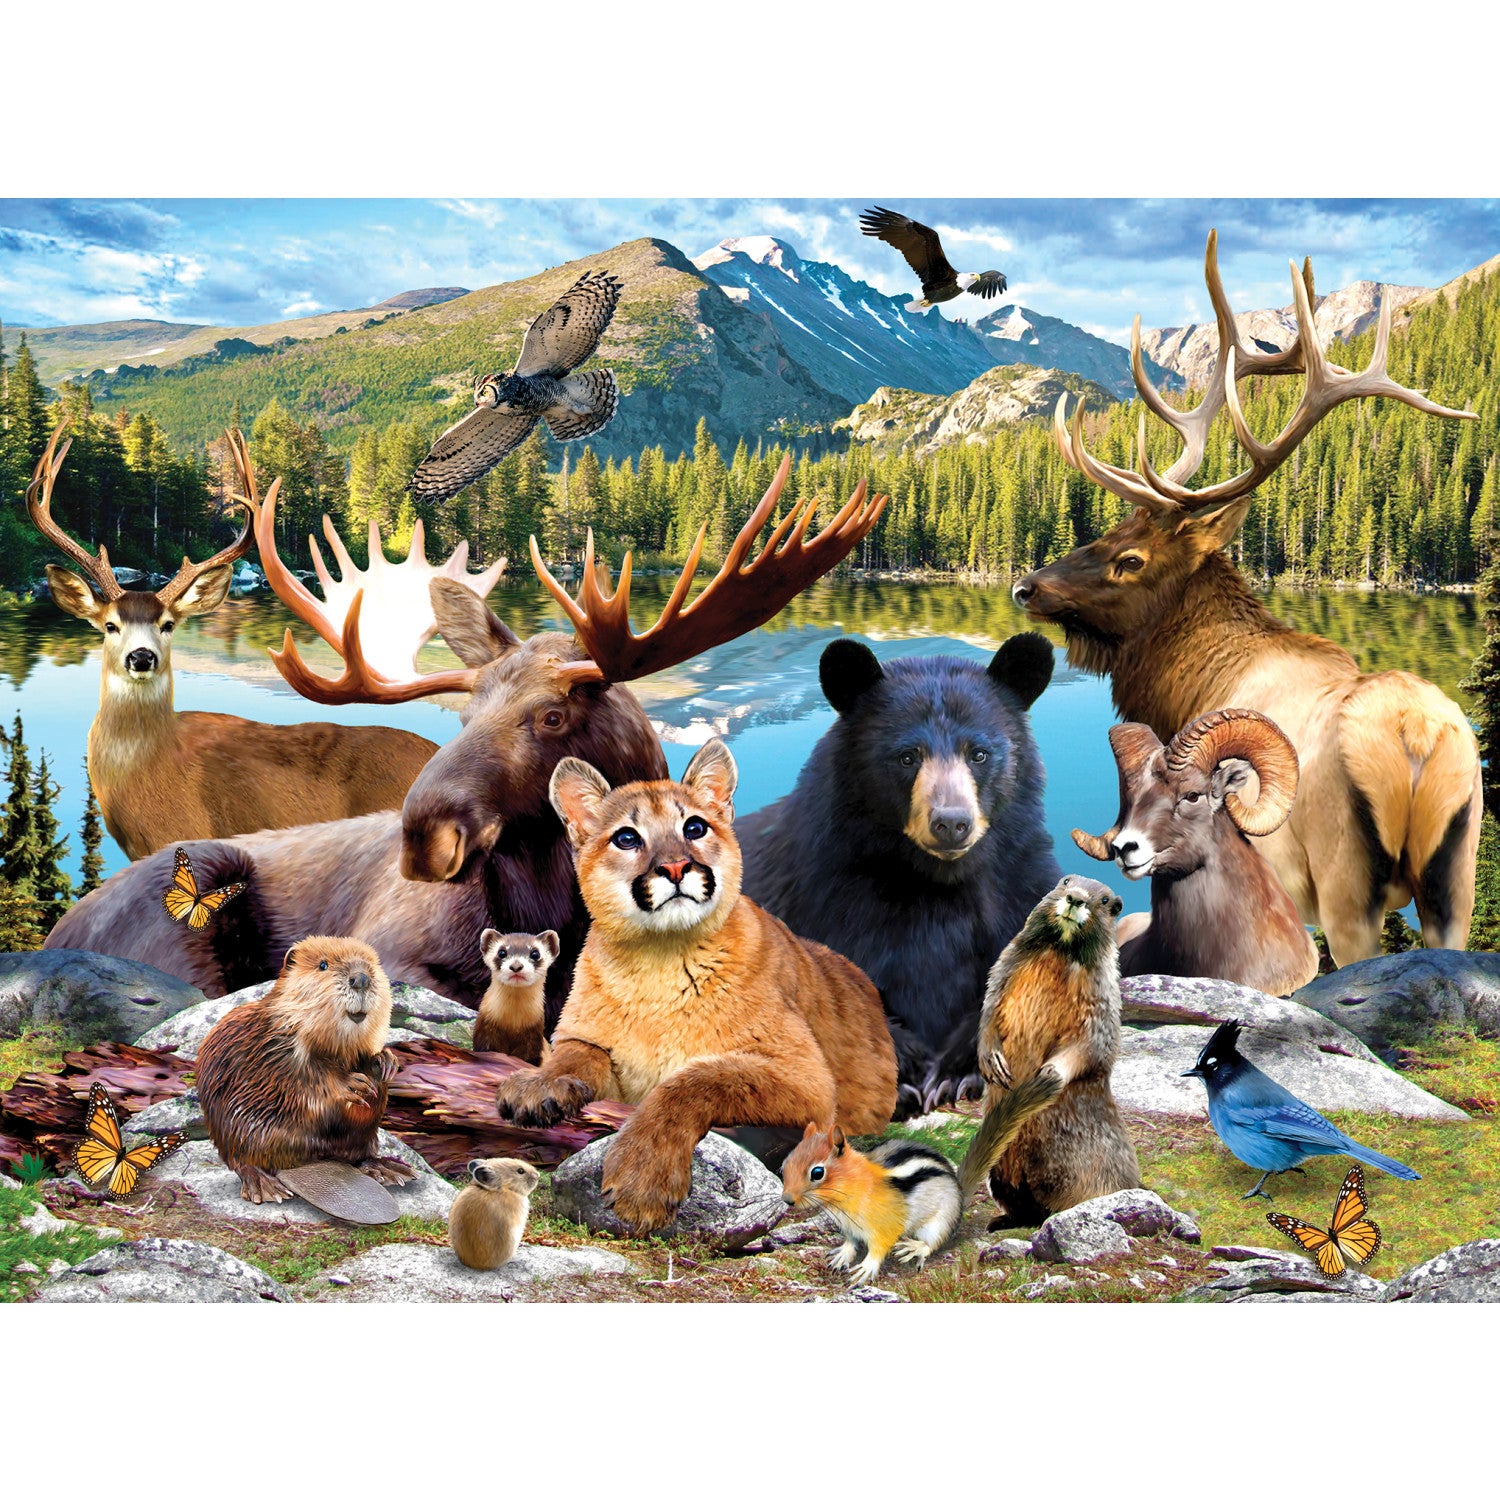 Jr Ranger - Rocky Mountain National Park 100 Piece Puzzle